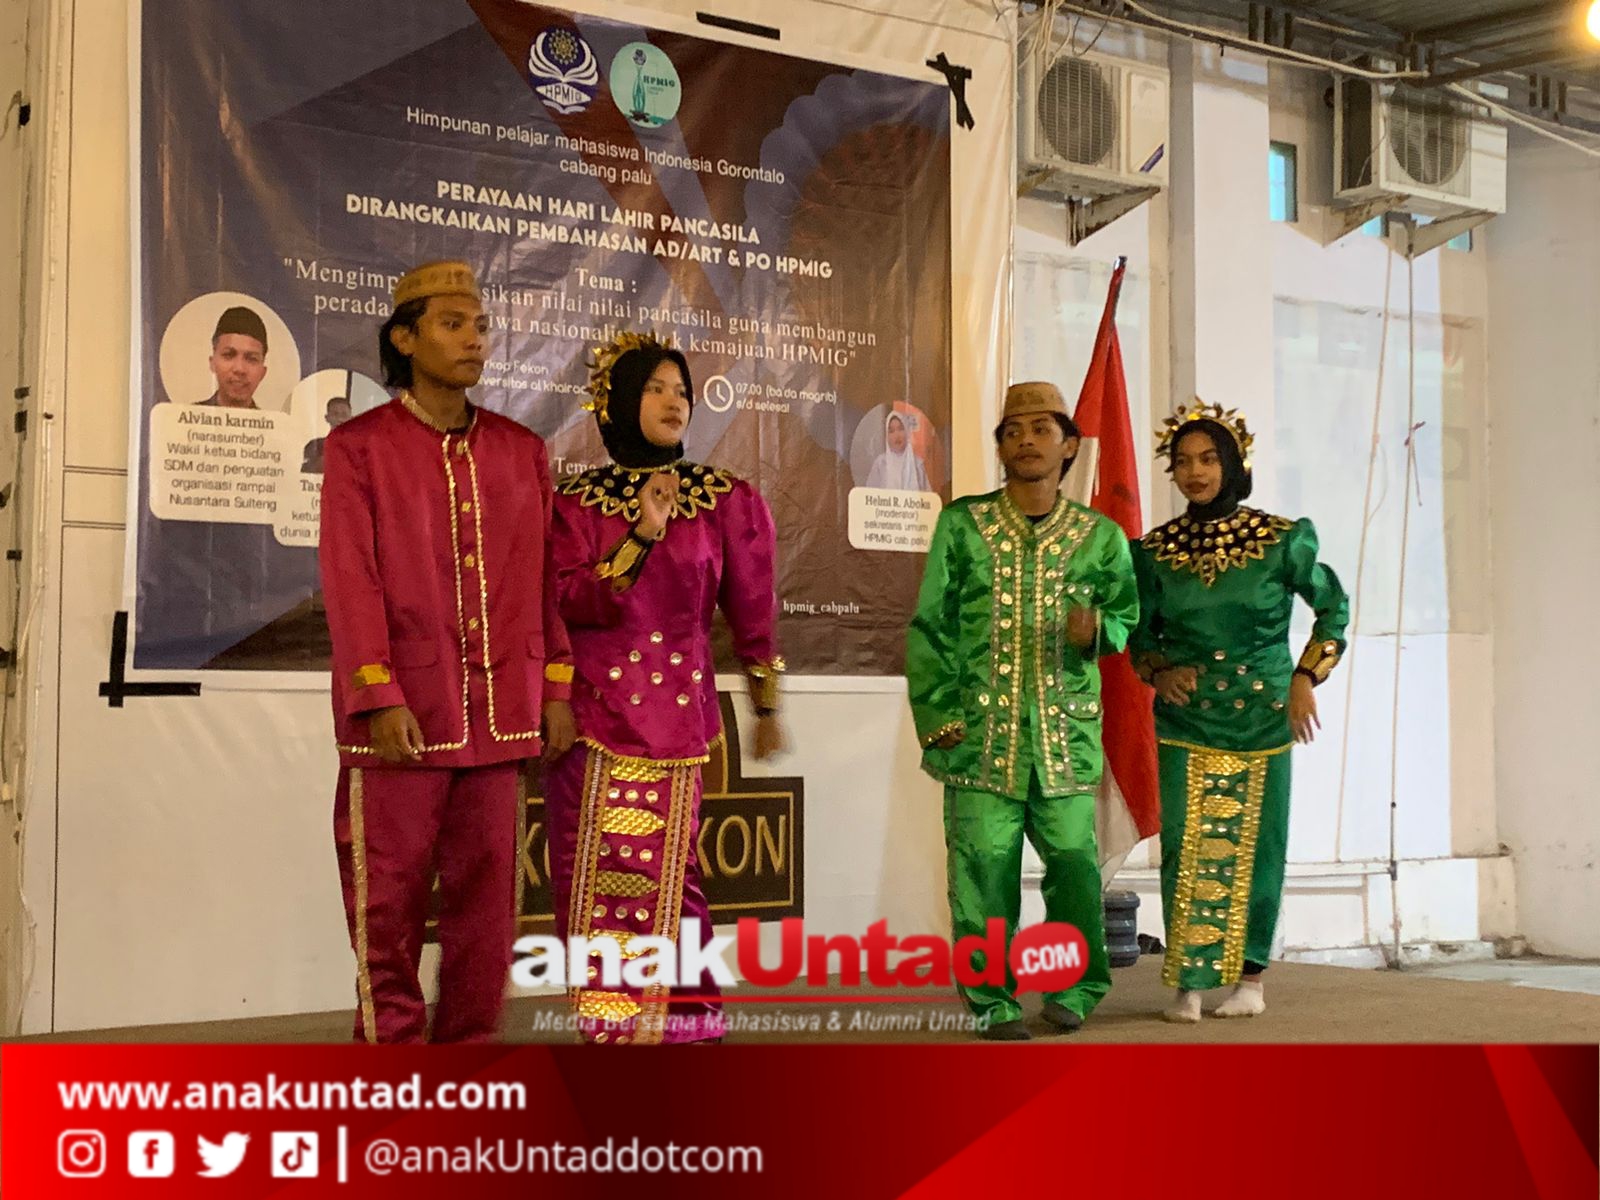 Tarian Saronde dan Lagu Hulonthalo Lipu’u Iringi Pembukaan Dialog Perayaan Harlah Pancasila HPMI Gorontalo